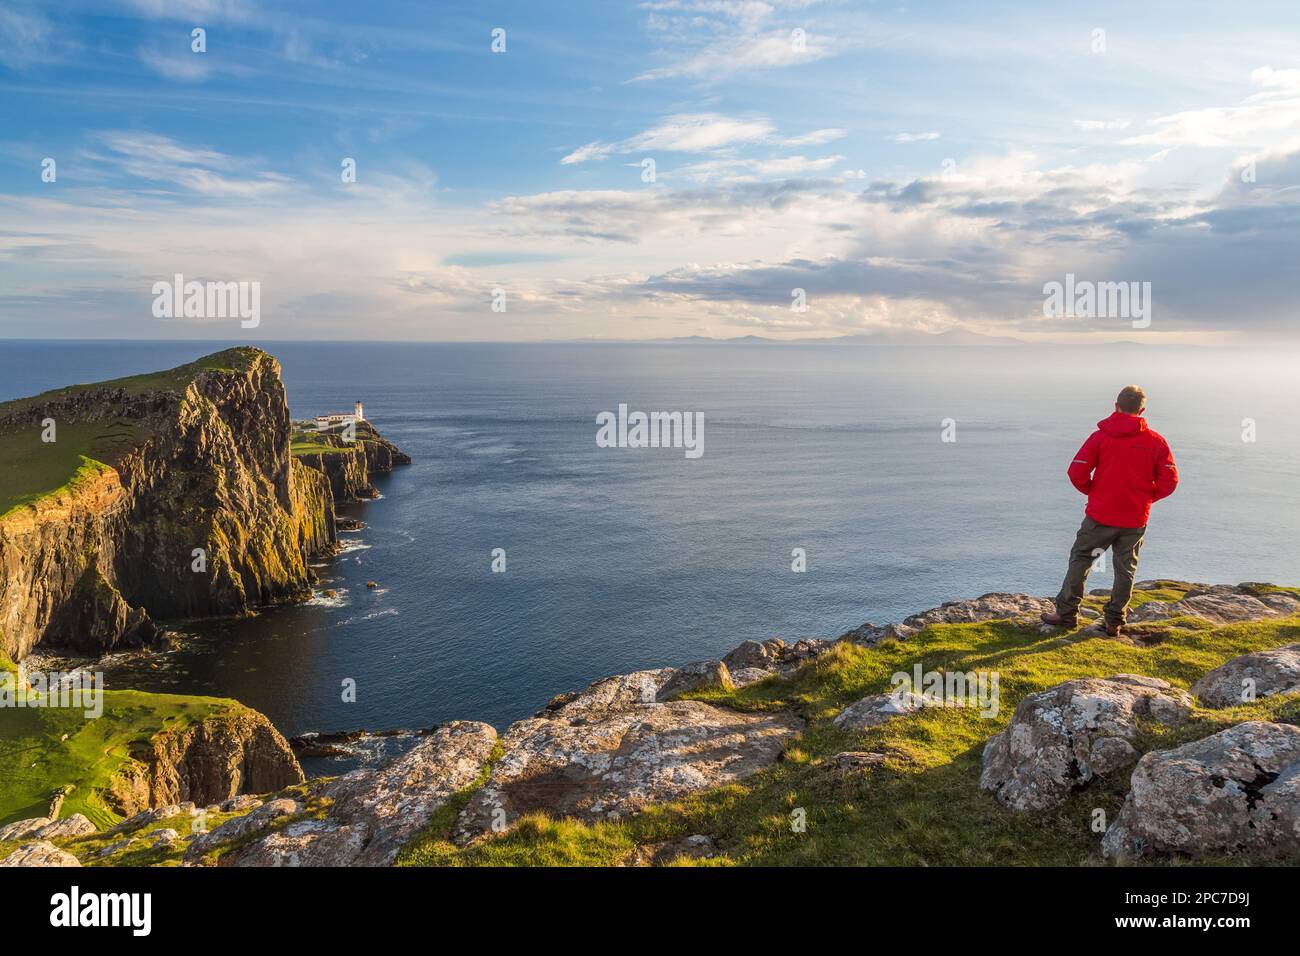 Homme admirant la vue, phare, point néiste, île de Skye, région des Highlands, Écosse Banque D'Images